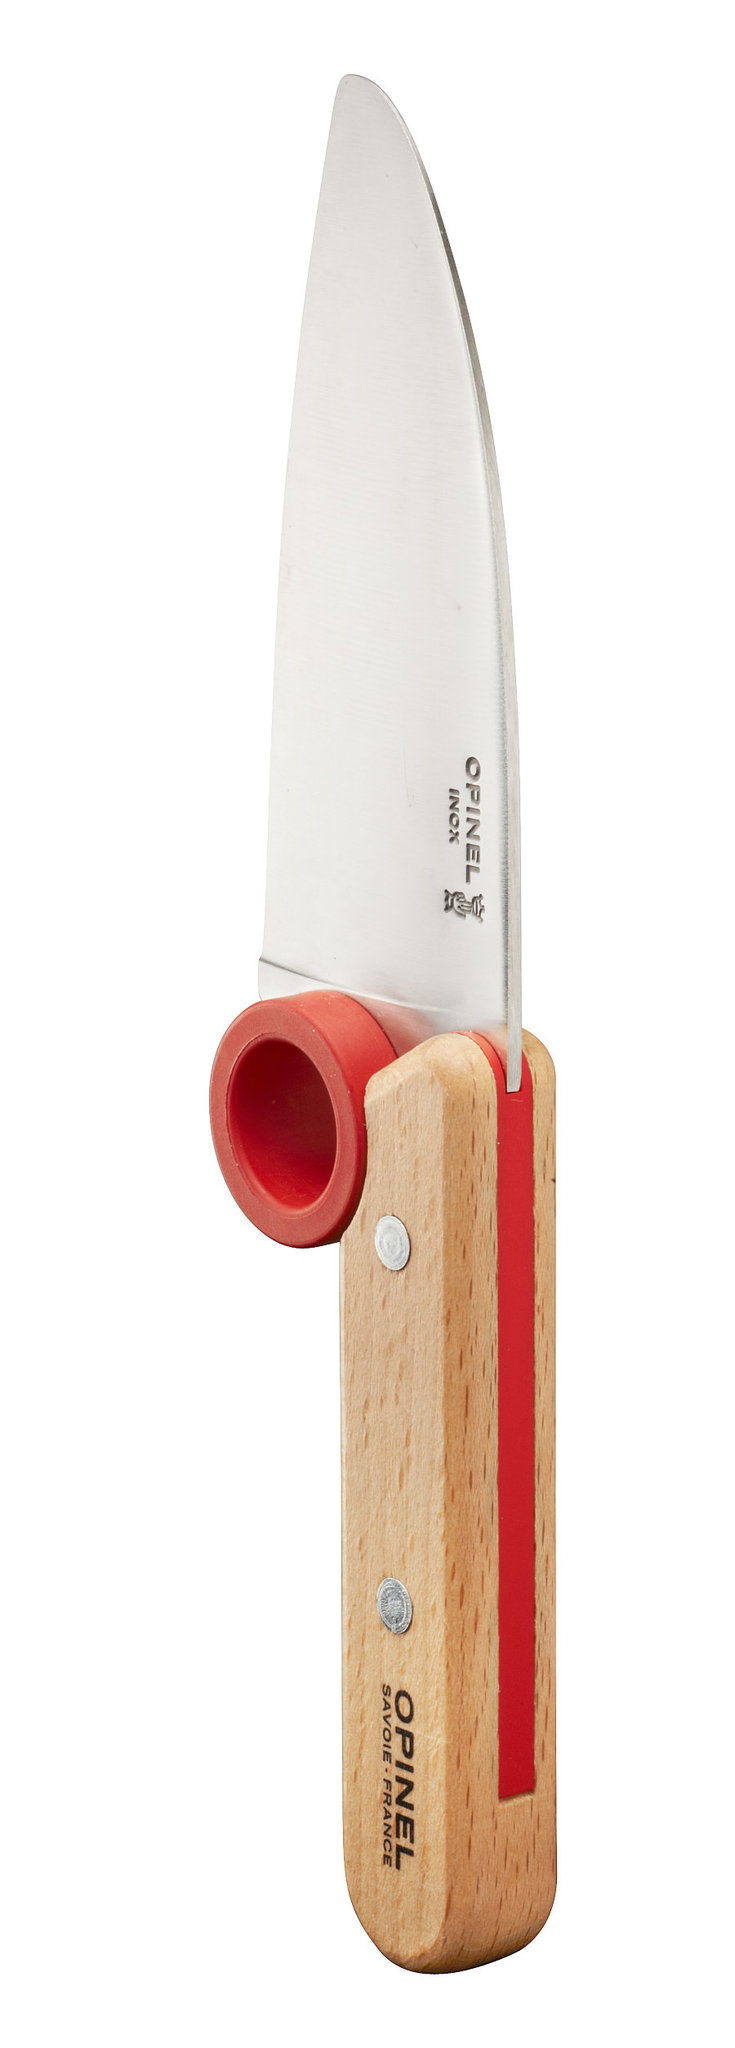 Нож шеф-повара Opinel, защита пальцев, деревянная рукоять, нержавеющая сталь, коробка - фото 4